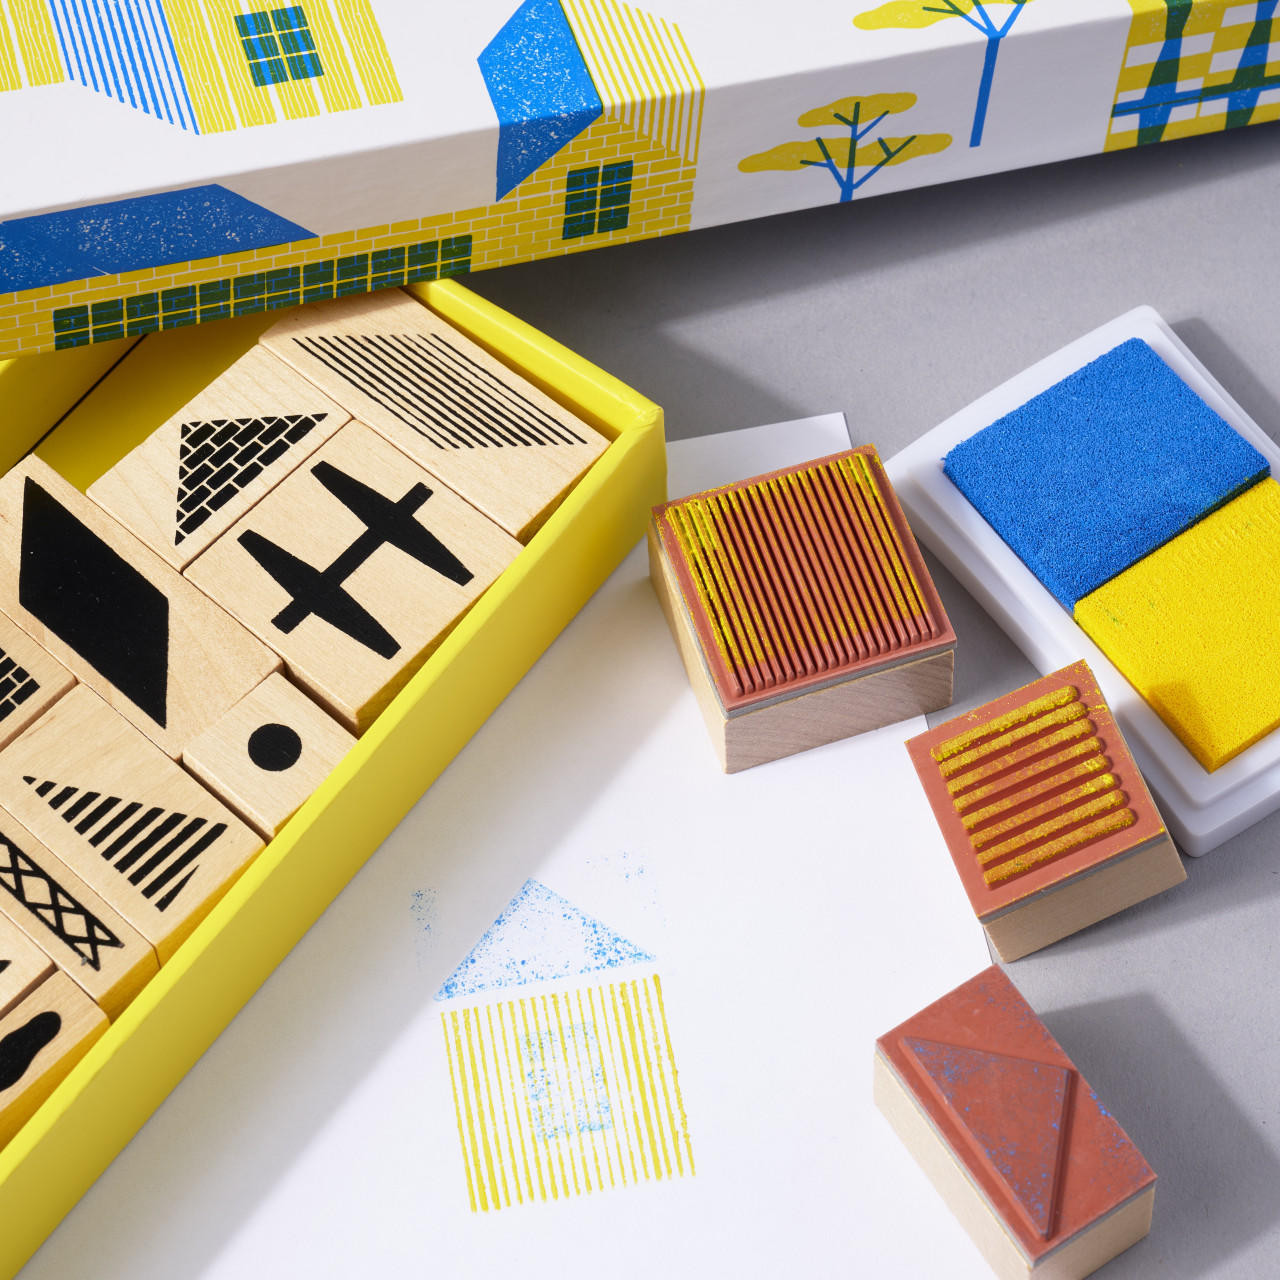 Tampon case  Museum of Design in Plastics